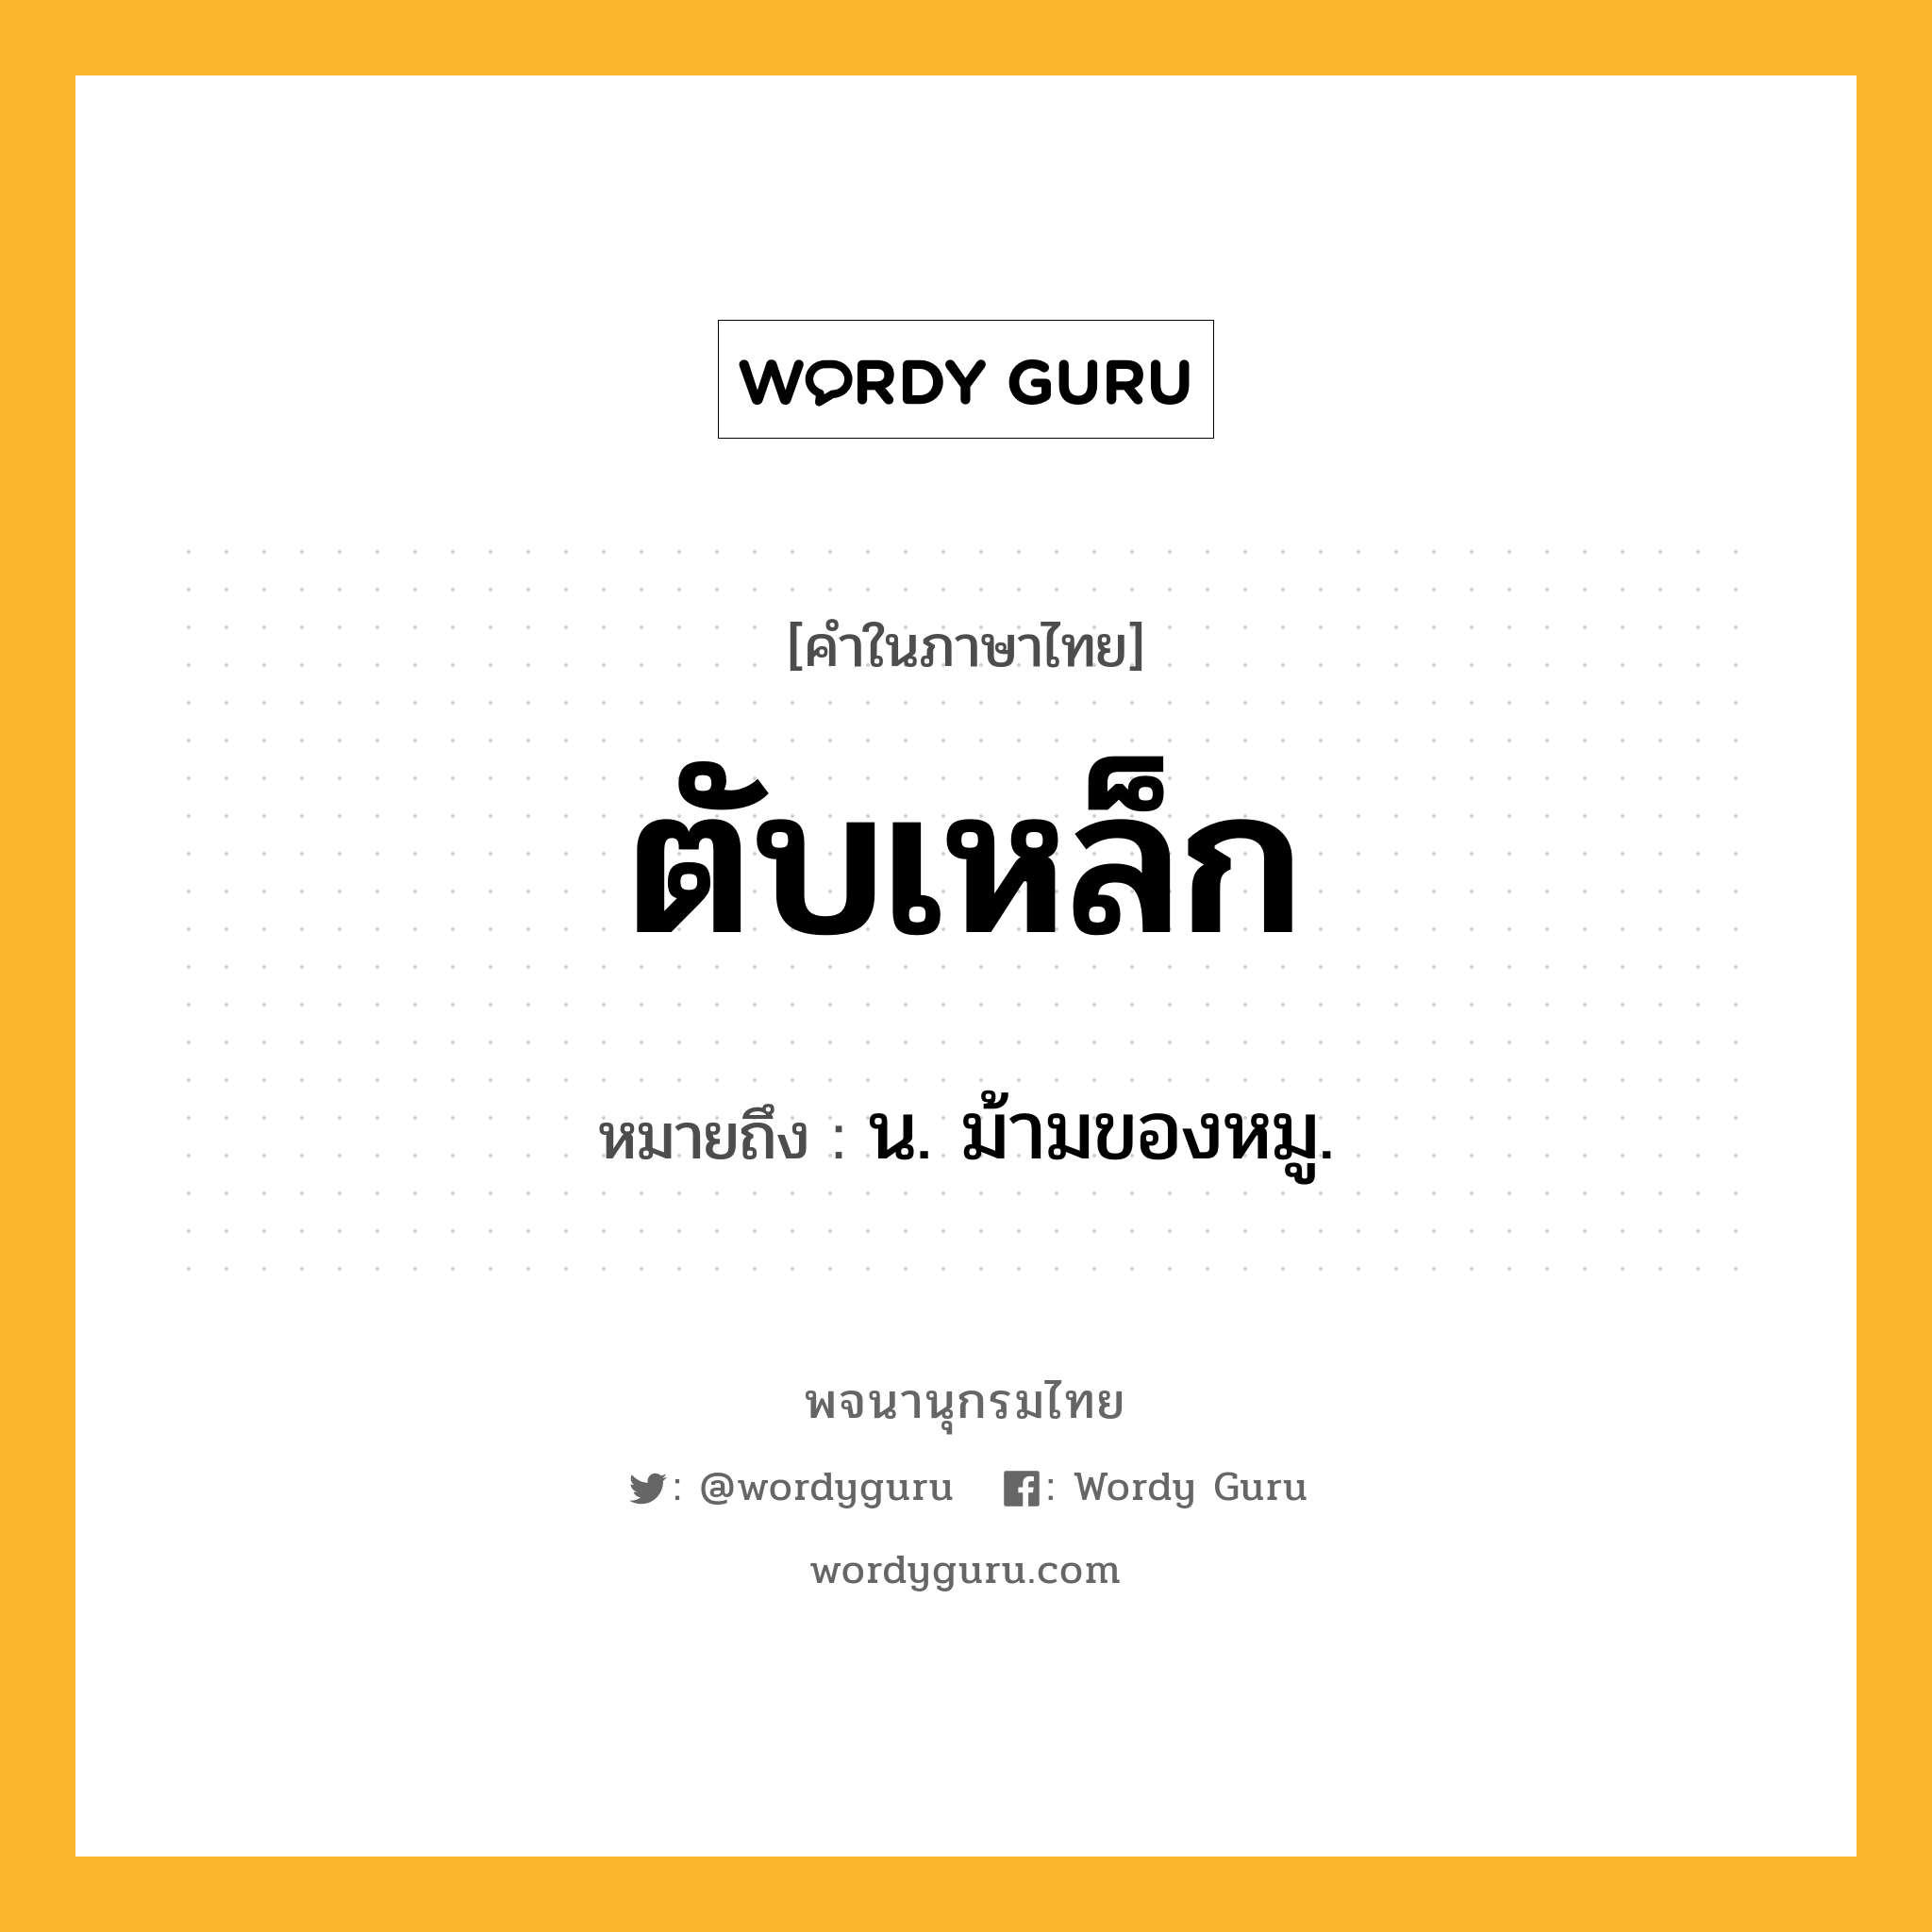 ตับเหล็ก ความหมาย หมายถึงอะไร?, คำในภาษาไทย ตับเหล็ก หมายถึง น. ม้ามของหมู.